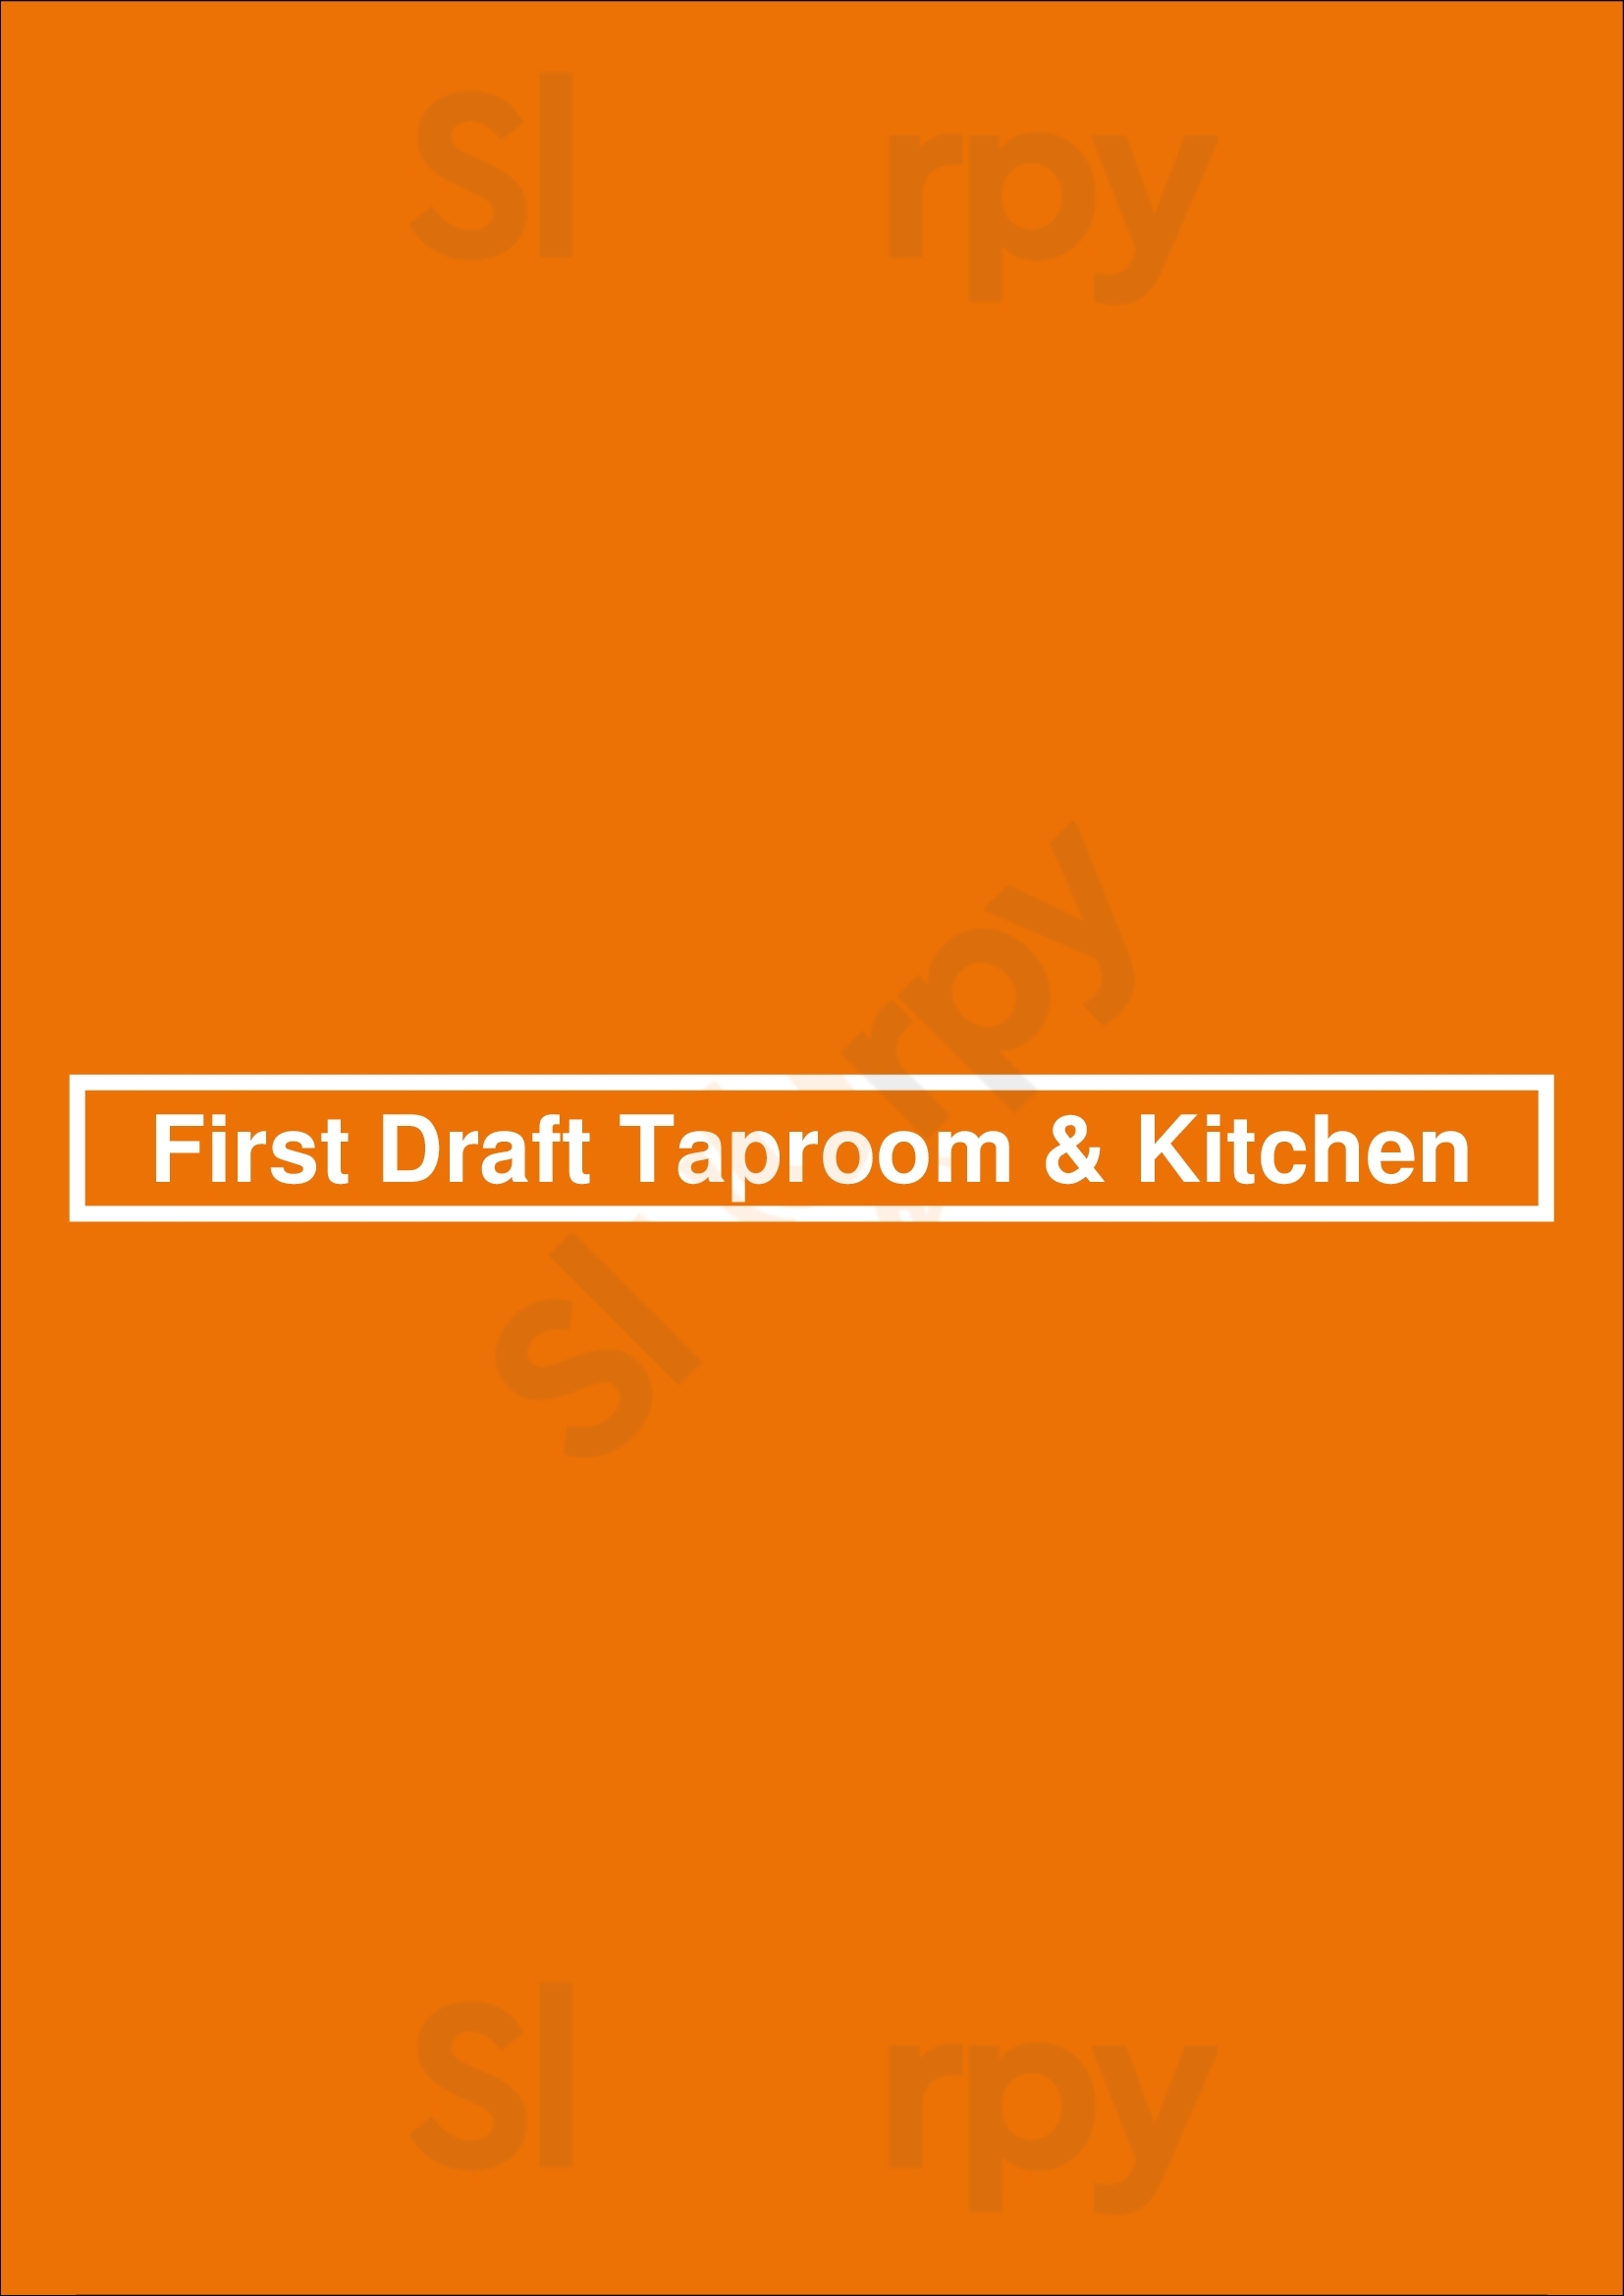 First Draft Taproom & Kitchen Denver Menu - 1